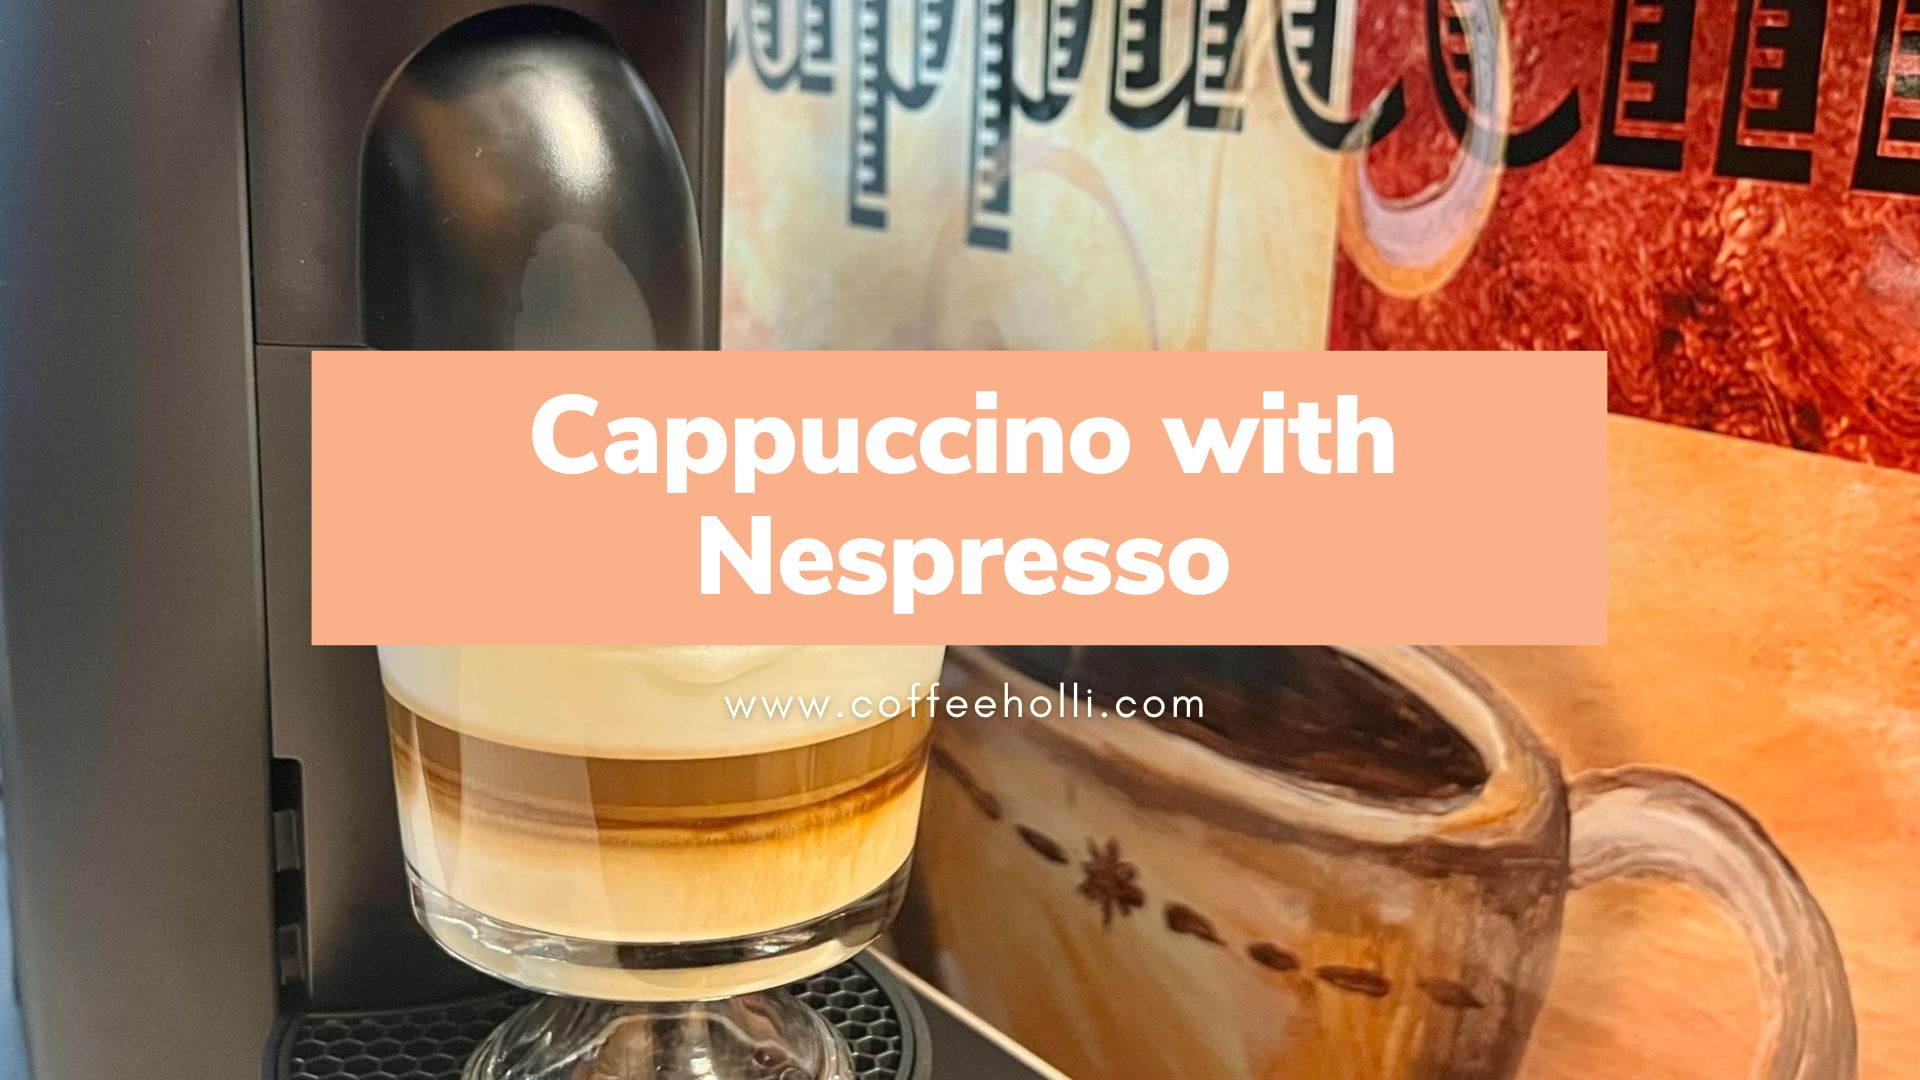 Cappuccino with Nespresso